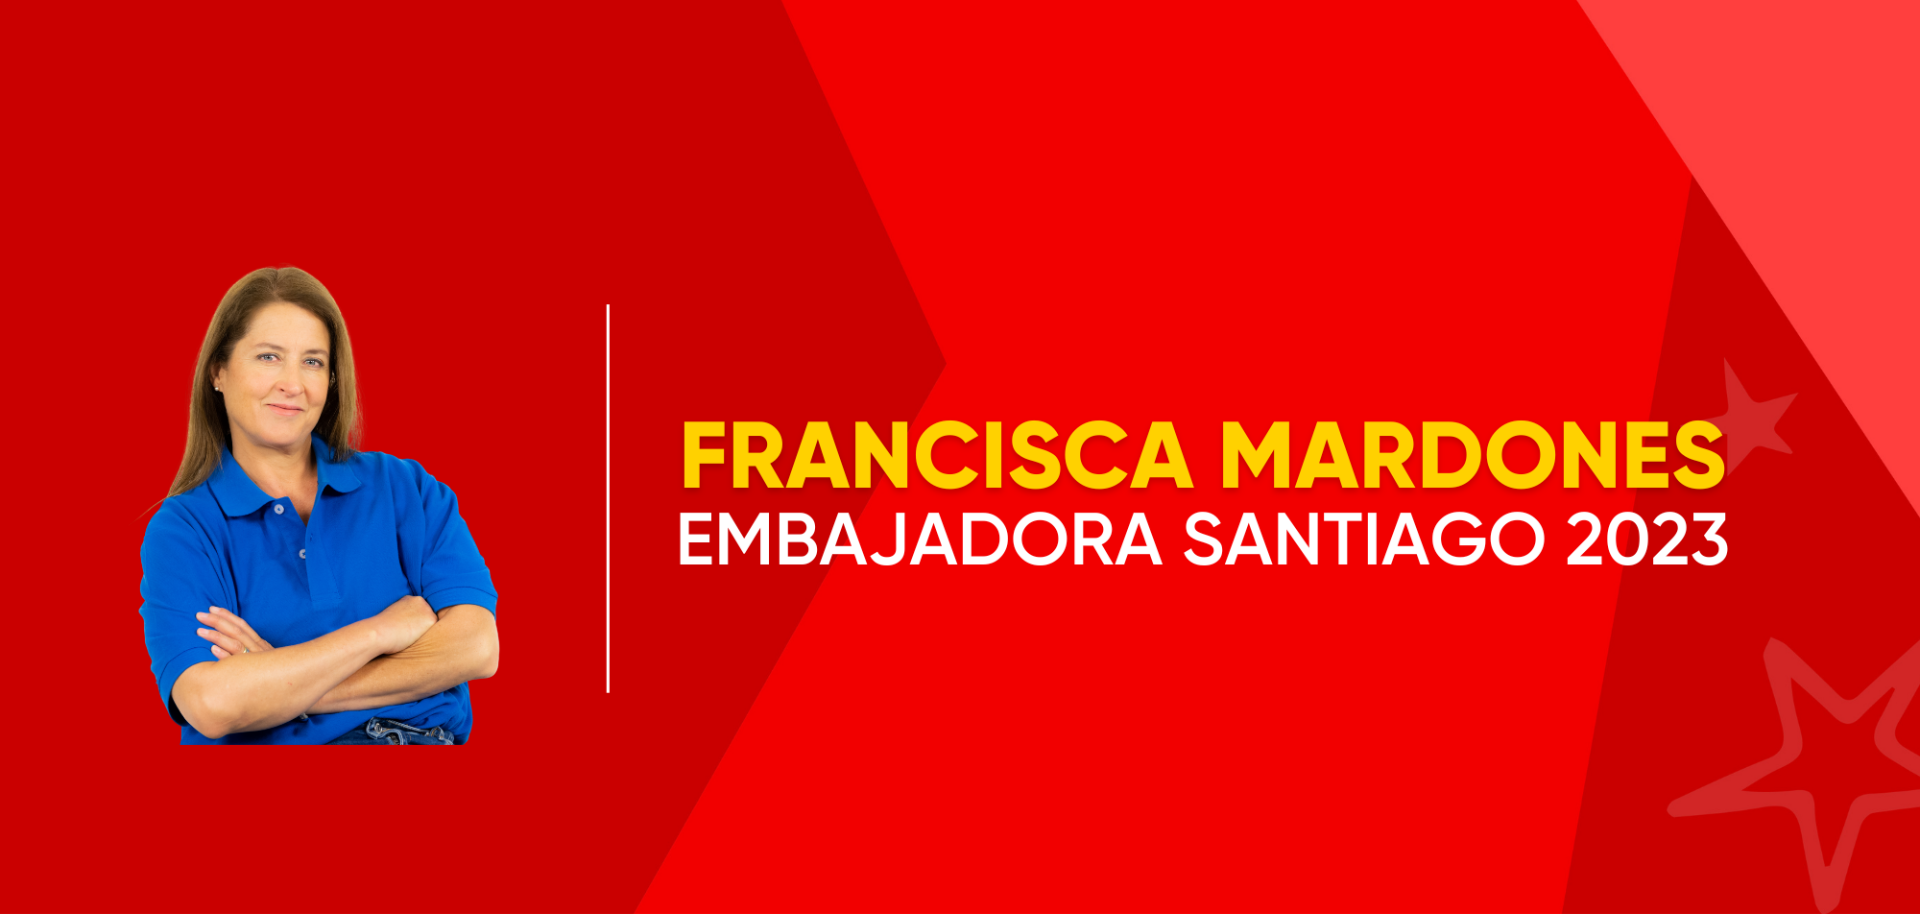 Francisca Mardones se sumó al equipo de embajadores. (Foto: Santiago 2023).